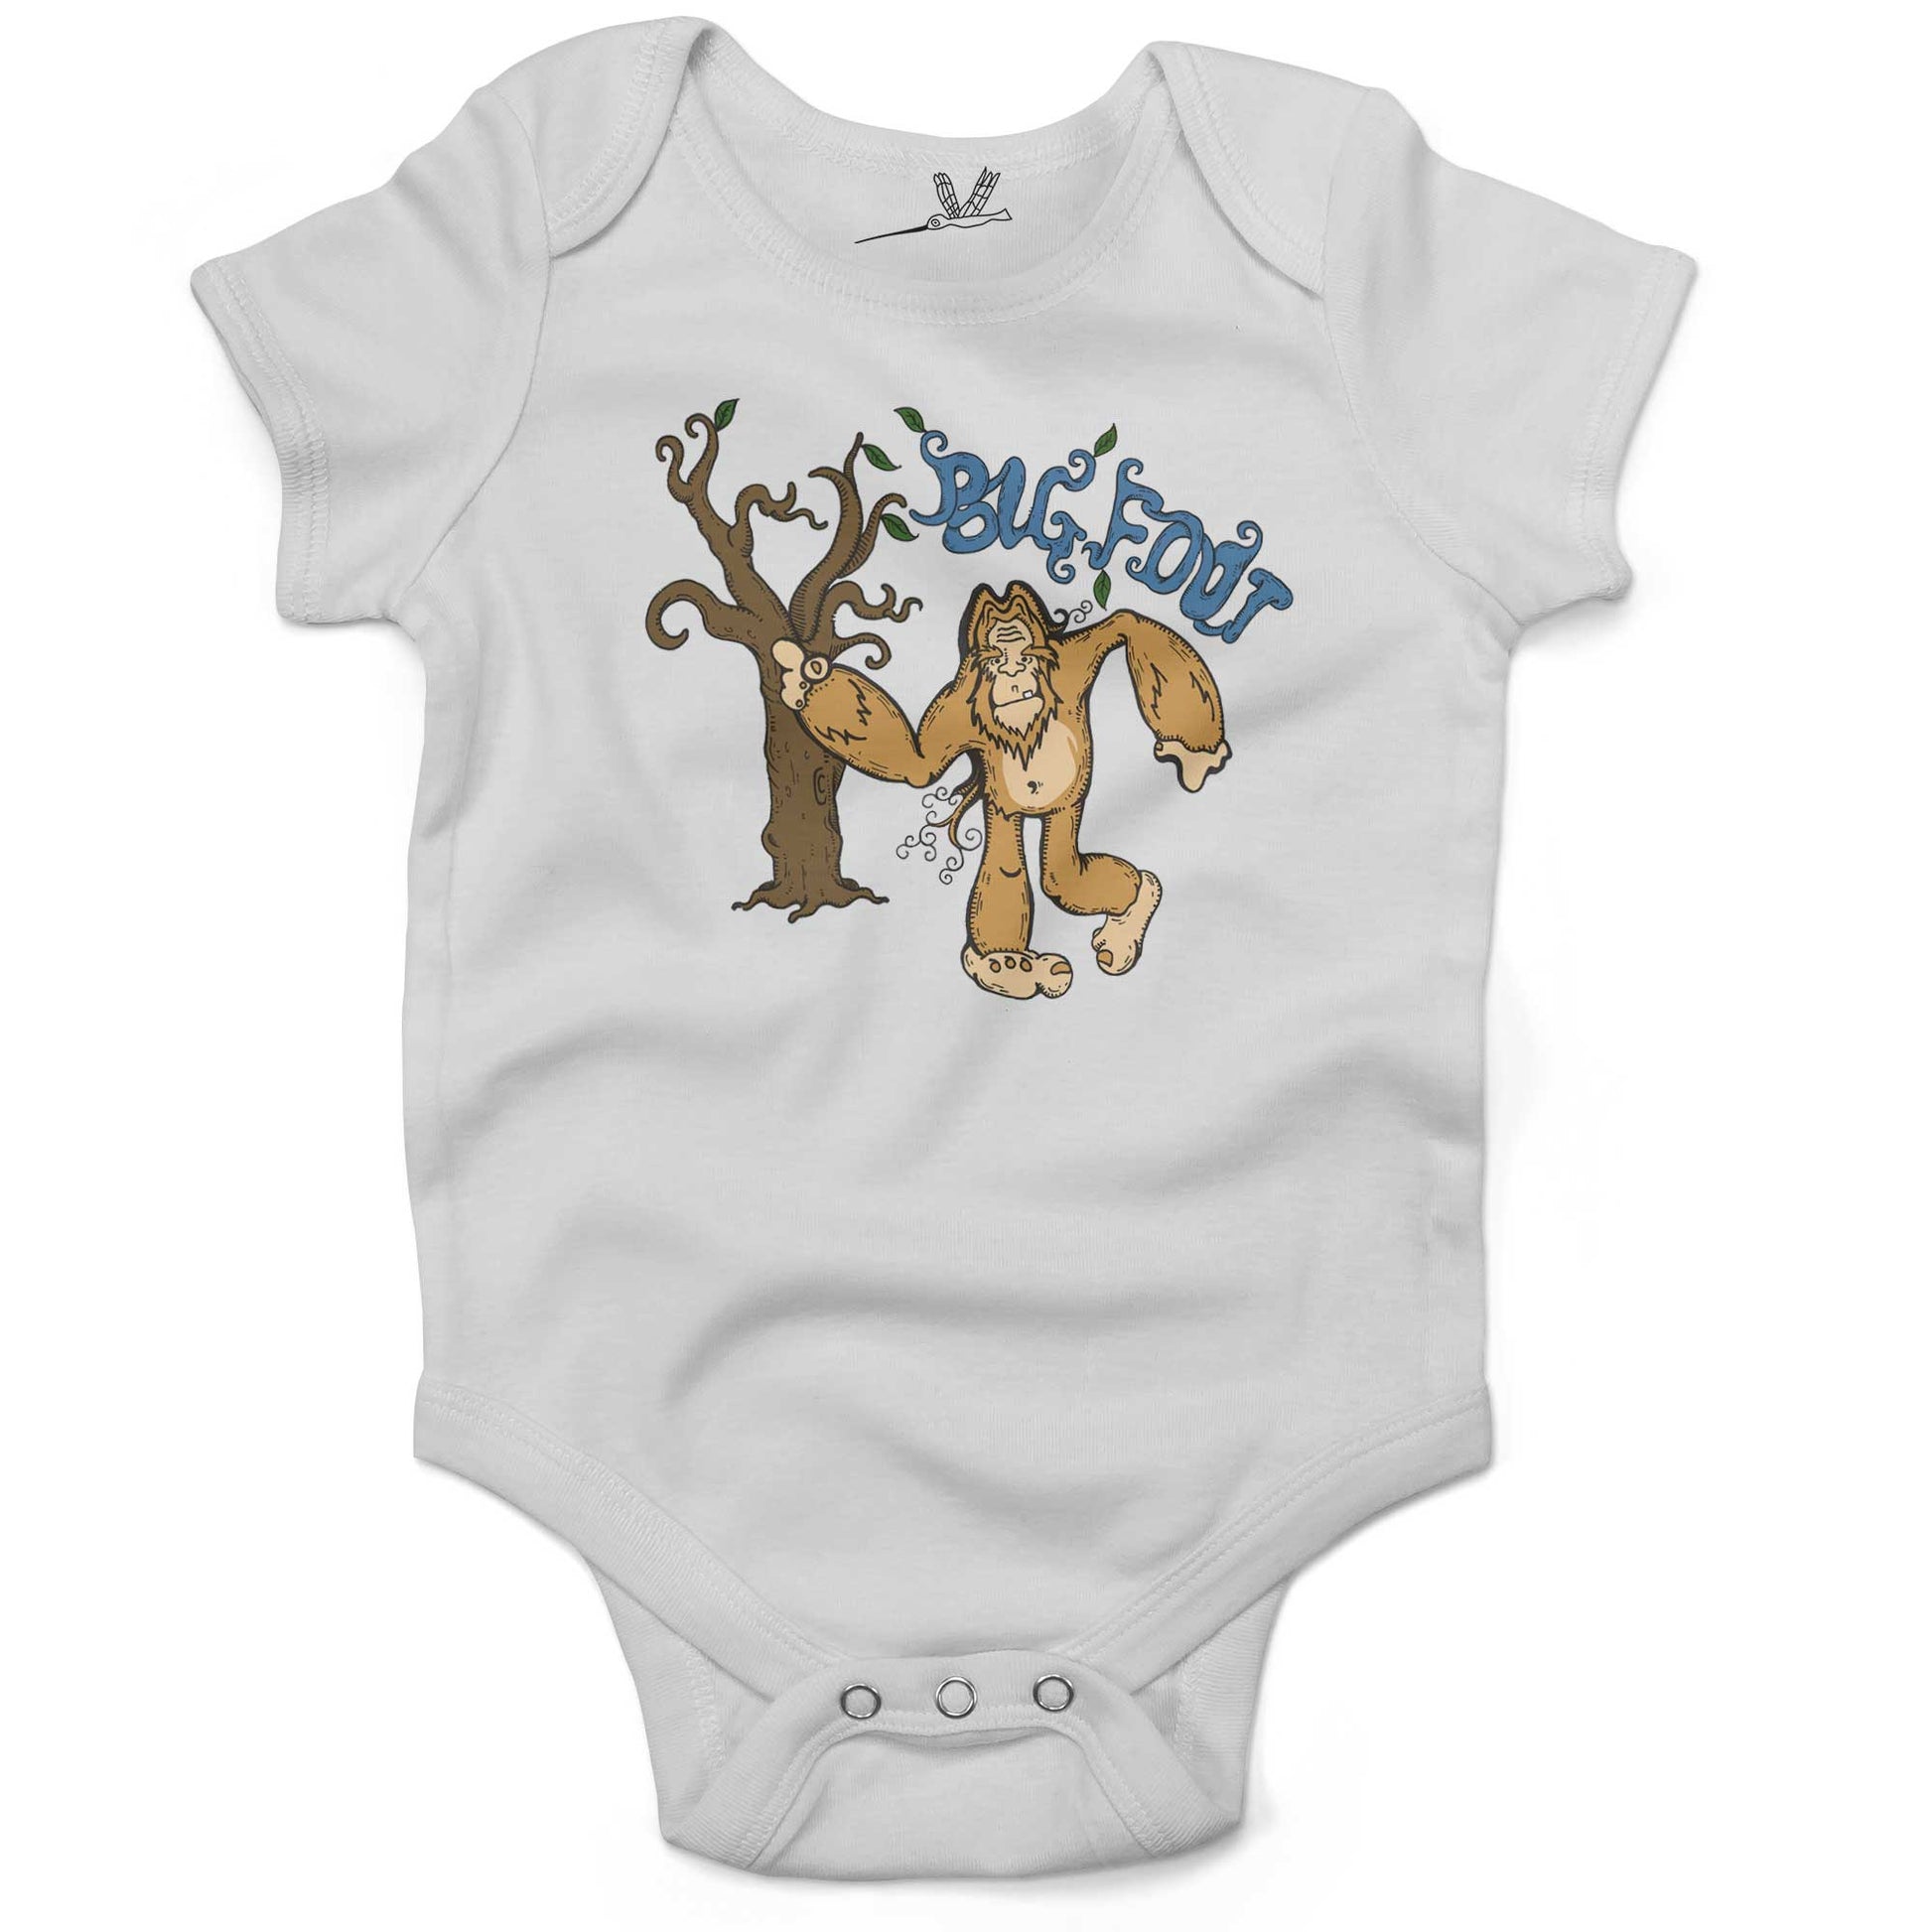 Bigfoot Infant Bodysuit or Raglan Baby Tee-White-3-6 months